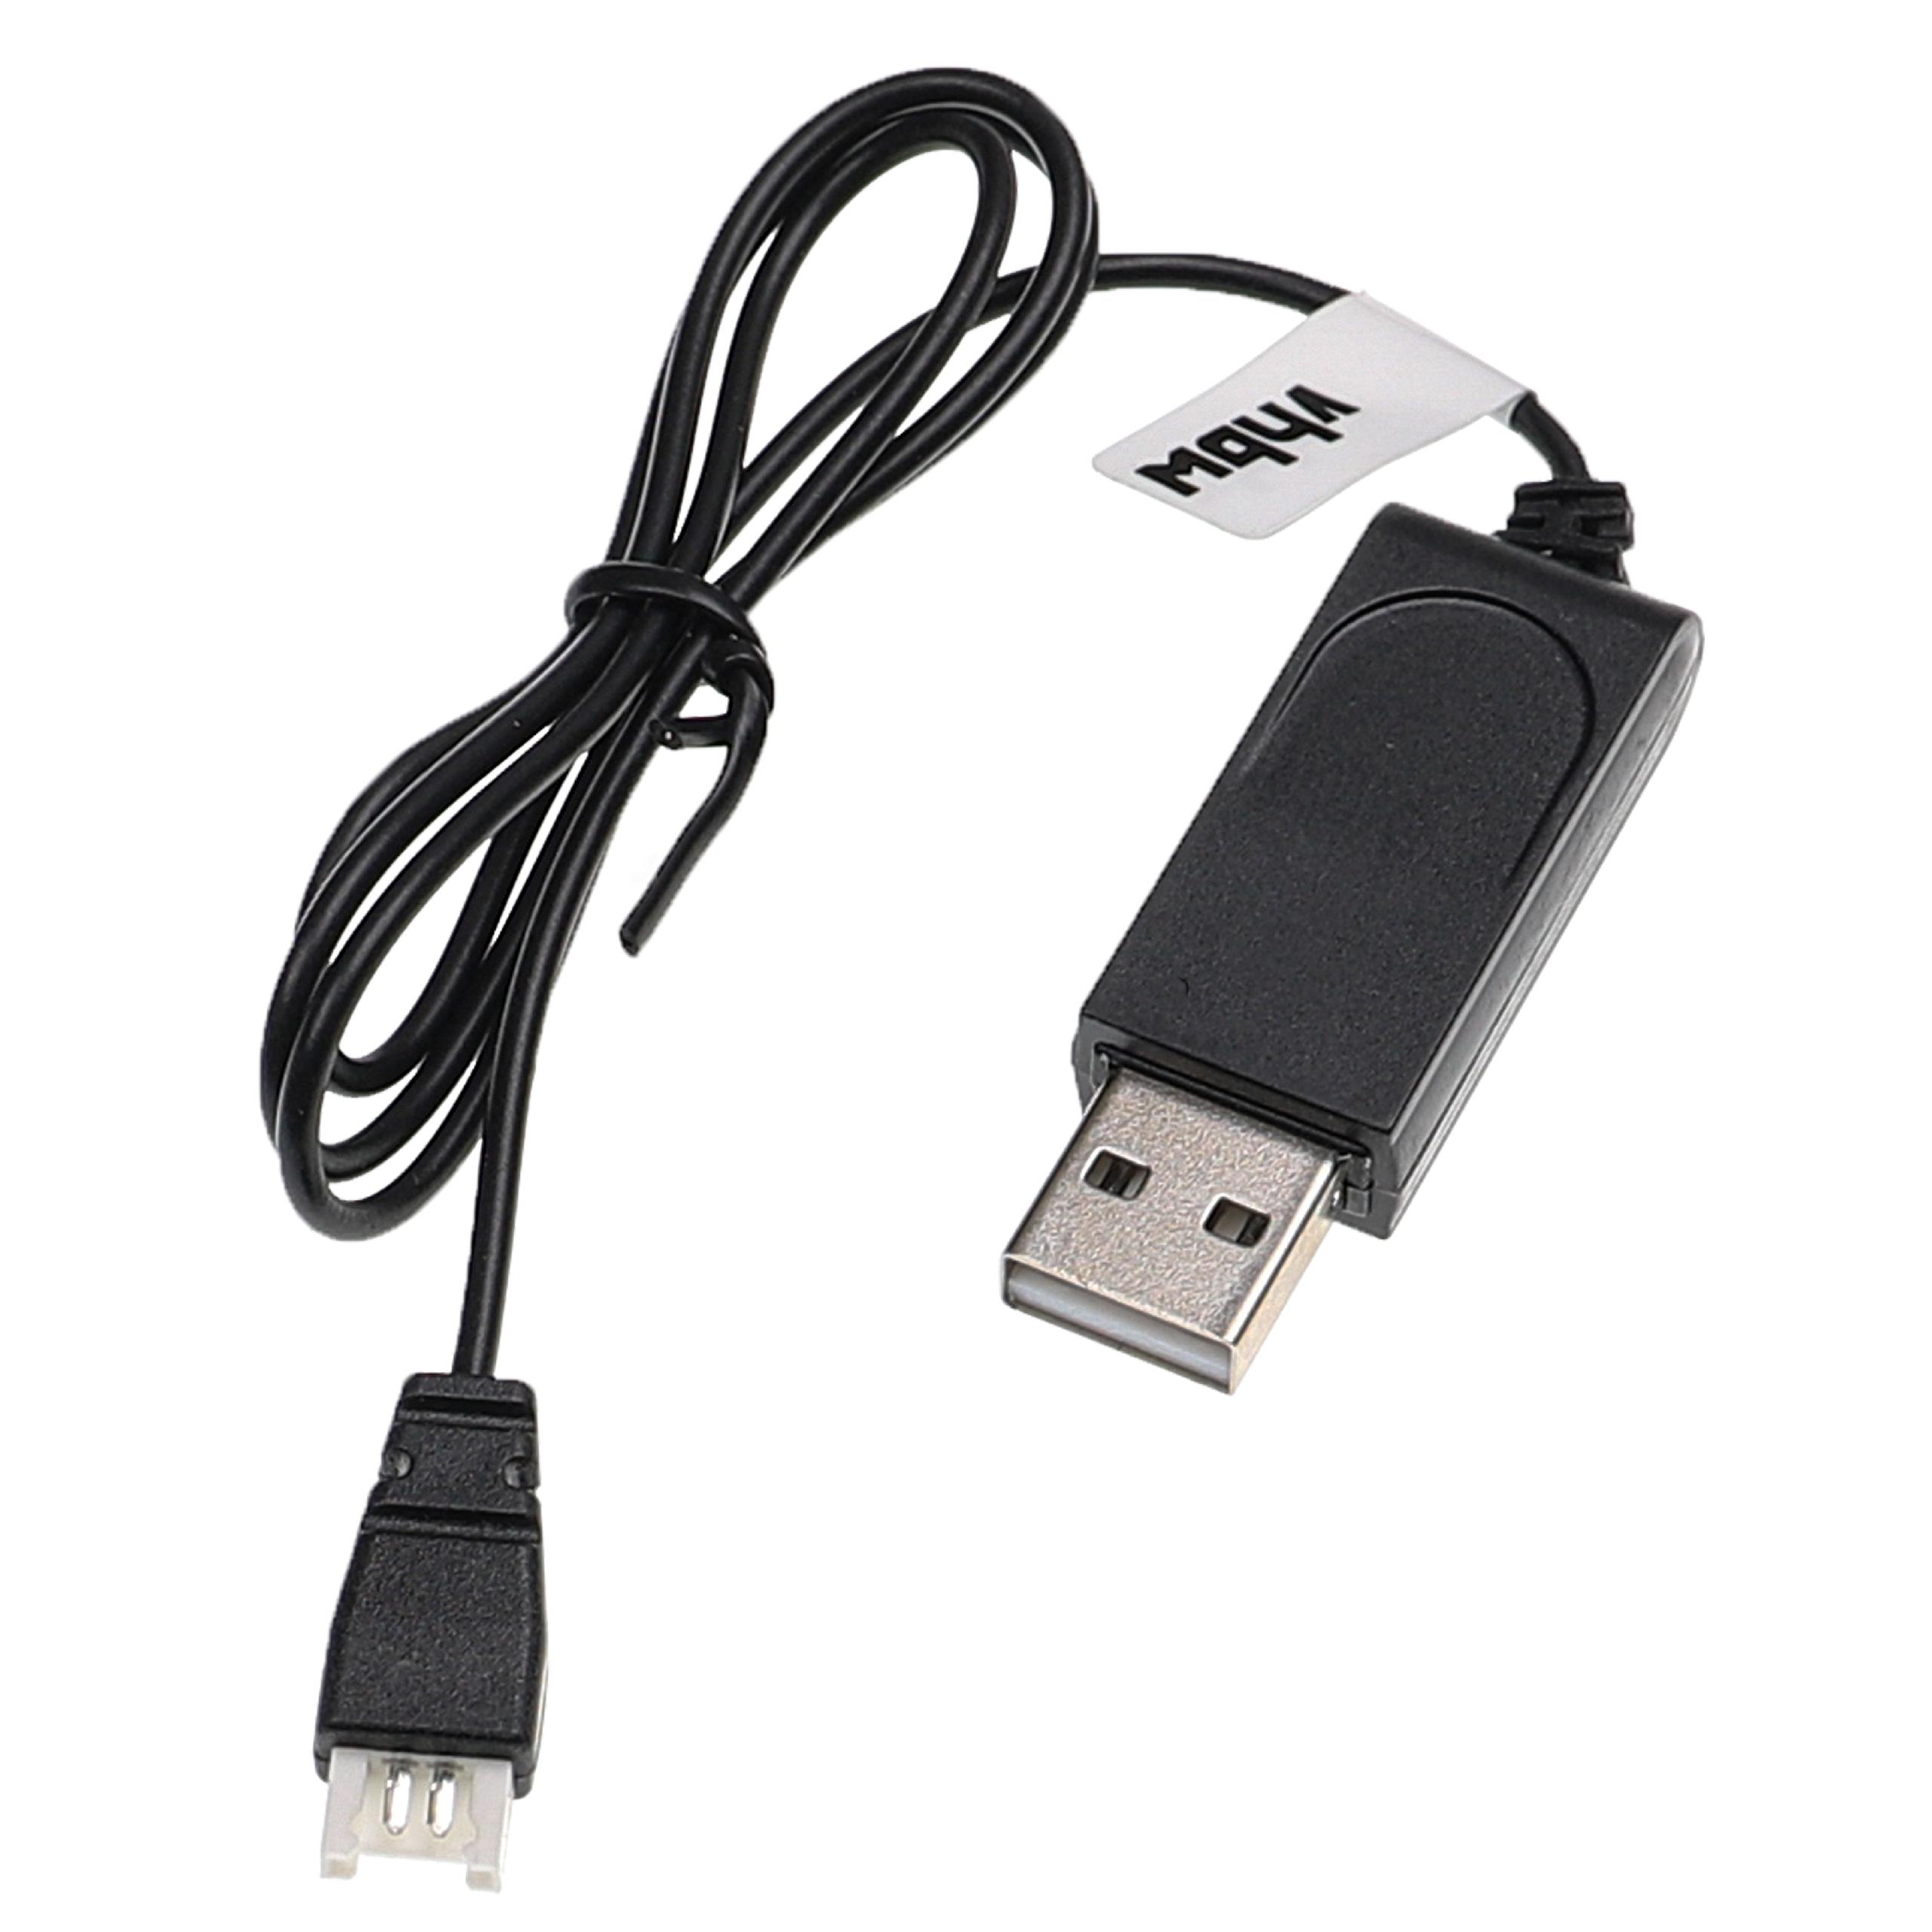 Kabel USB do ładowania drona Carrera zamiennik Carrera 503001/3, 370410145 - 60 cm